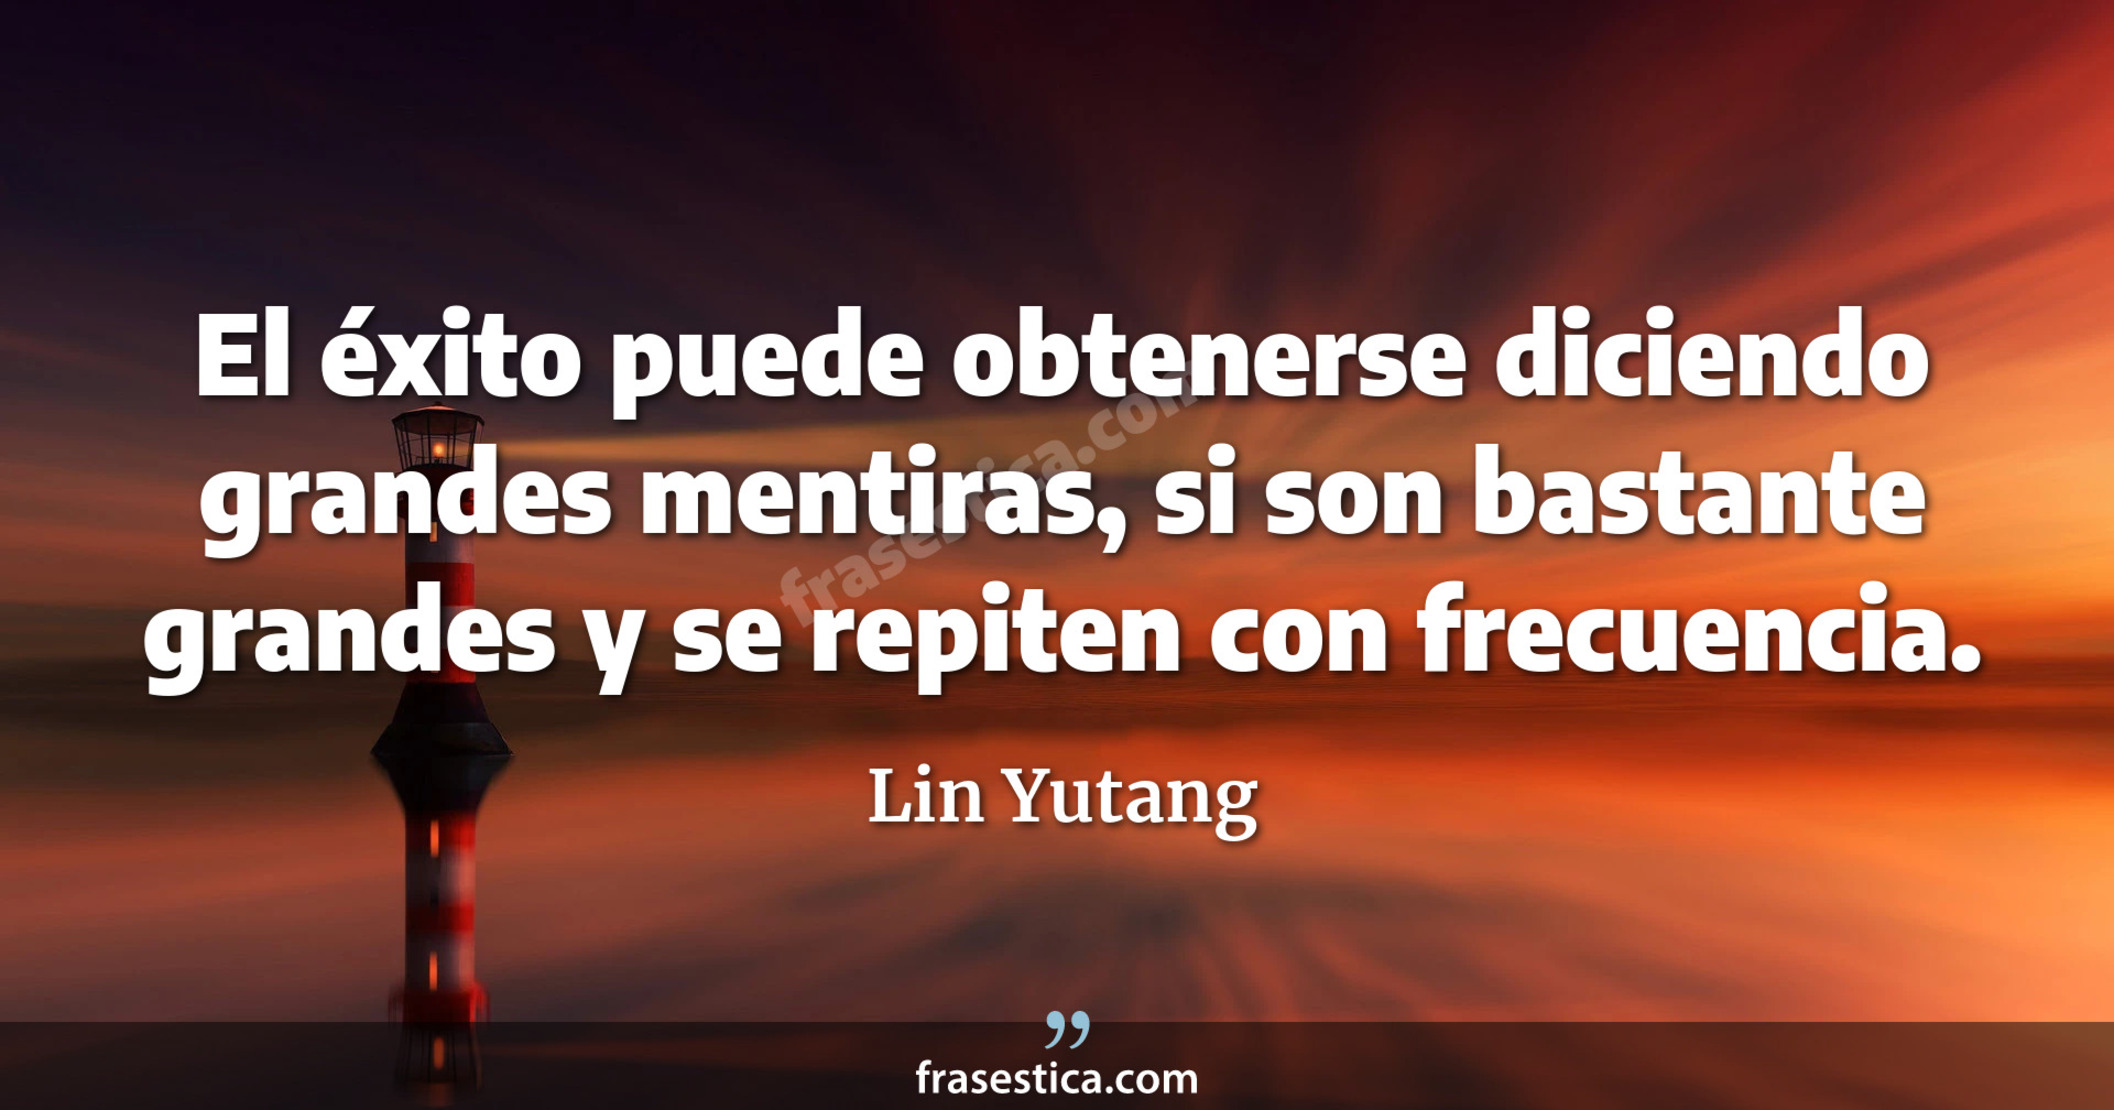 El éxito puede obtenerse diciendo grandes mentiras, si son bastante grandes y se repiten con frecuencia. - Lin Yutang